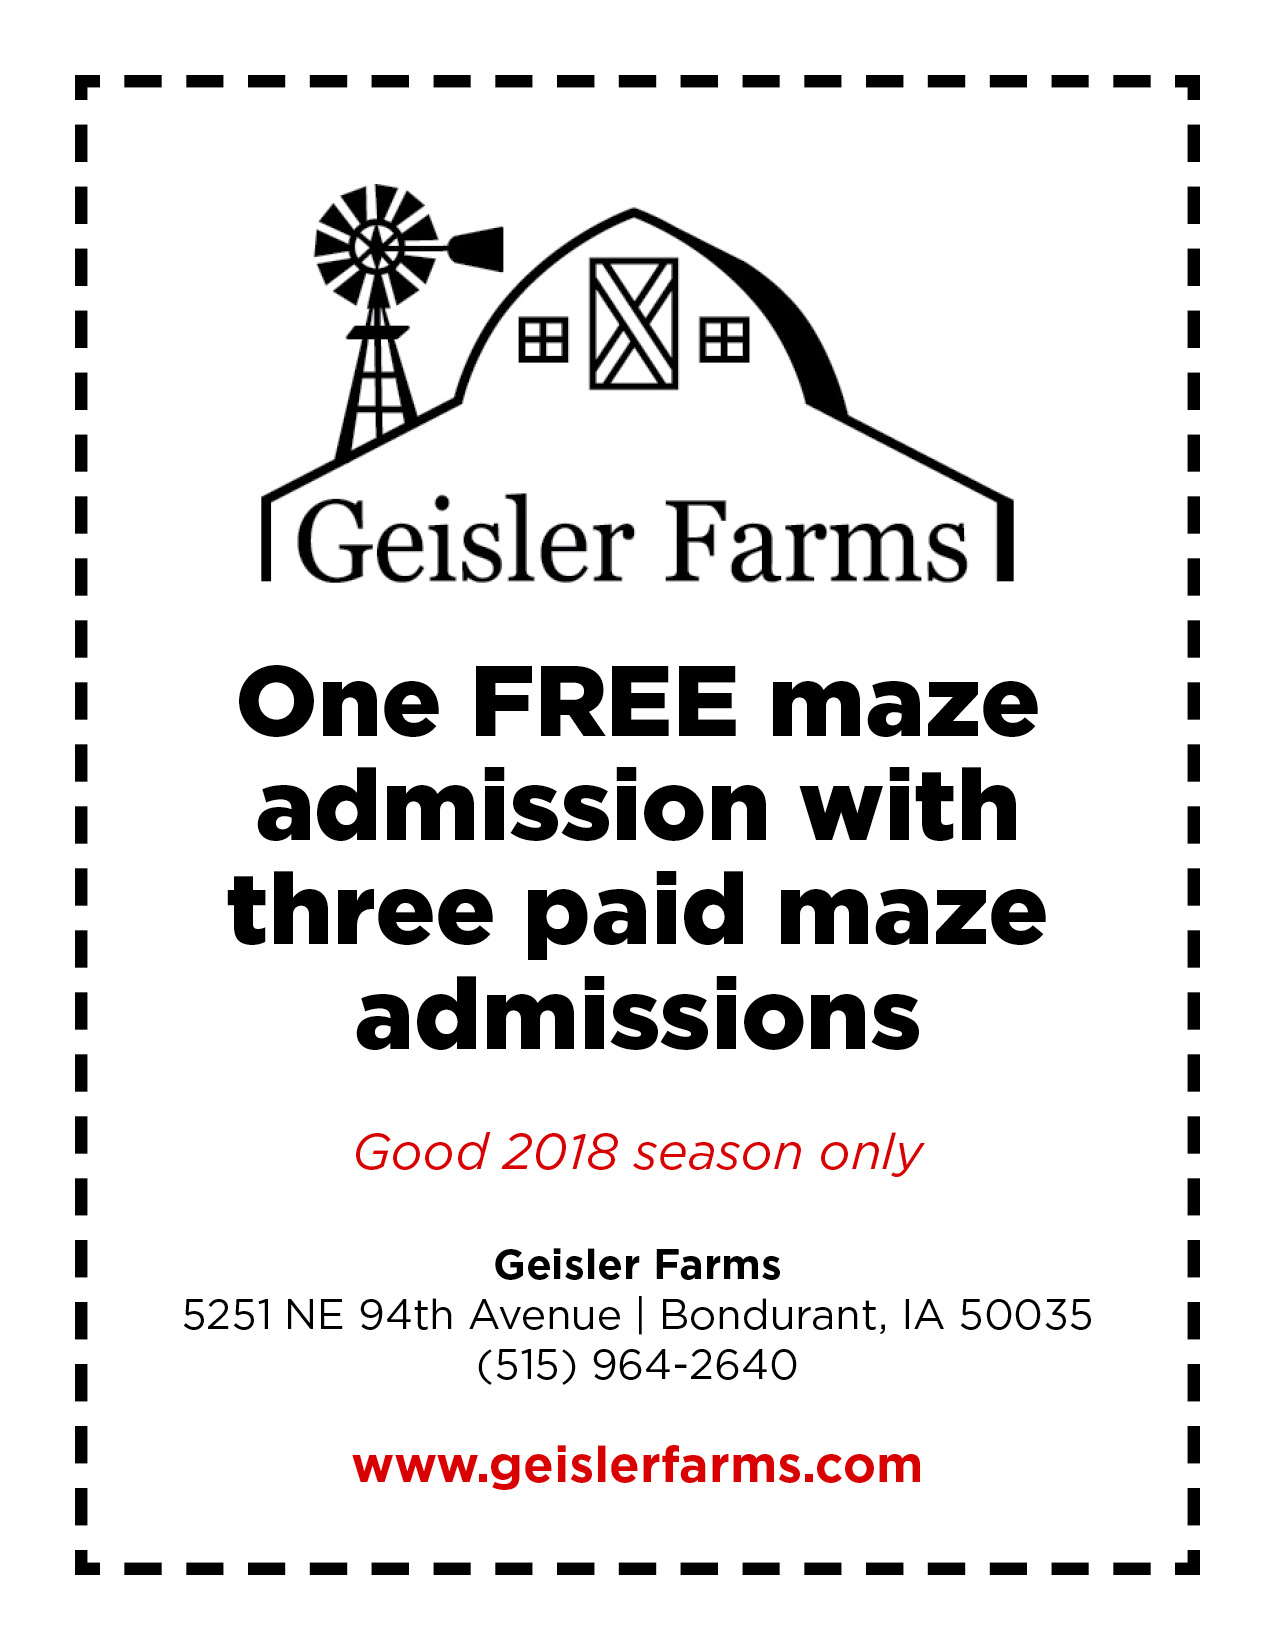 2018 Geisler Farms Coupon